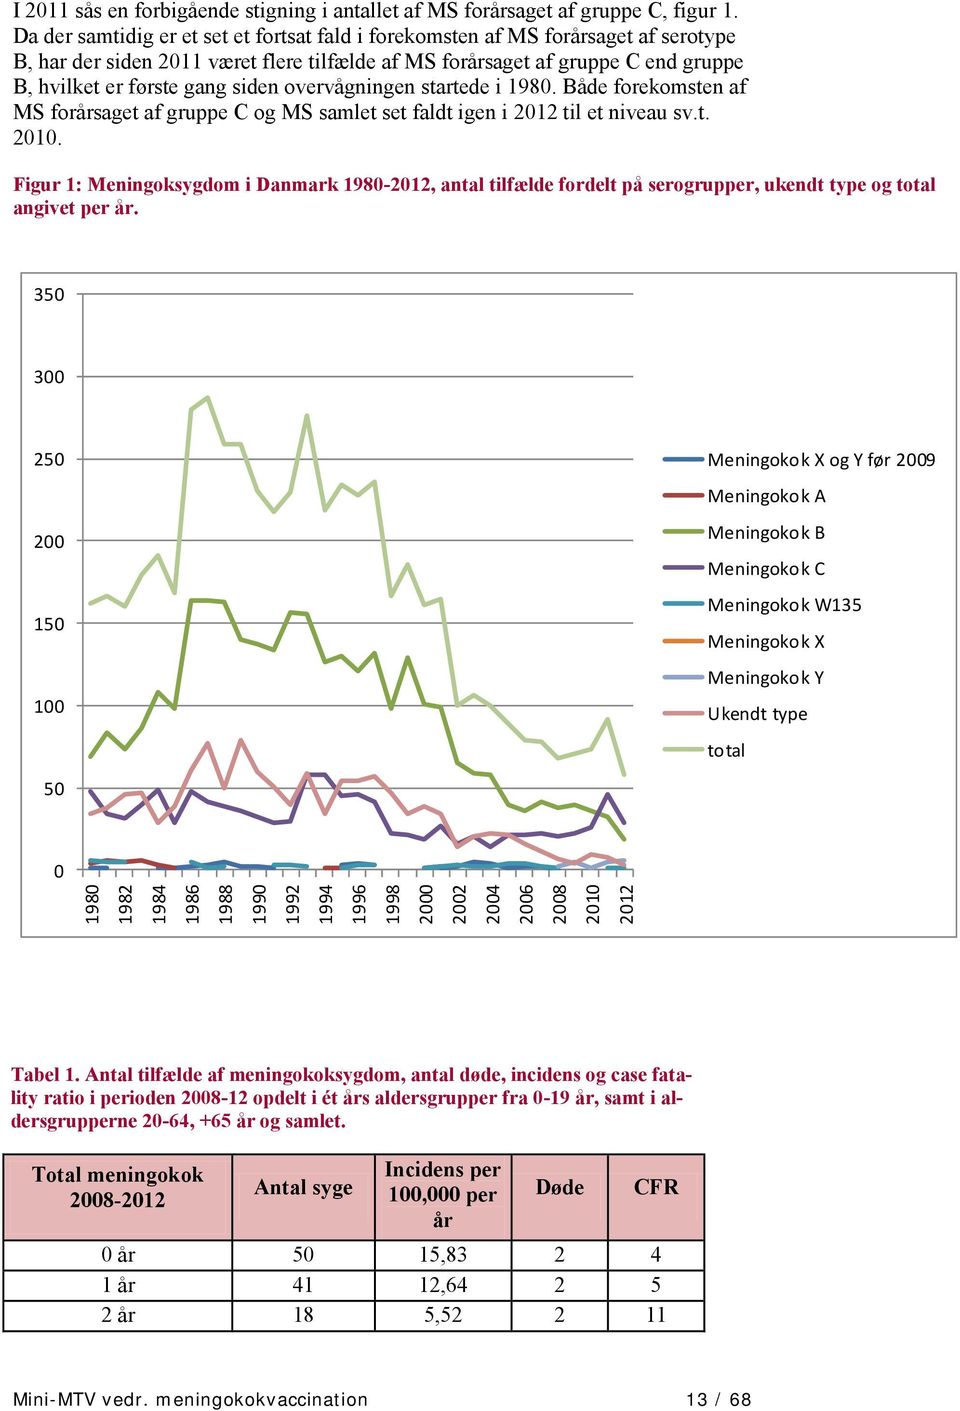 overvågningen startede i 1980. Både forekomsten af MS forårsaget af gruppe C og MS samlet set faldt igen i 2012 til et niveau sv.t. 2010.